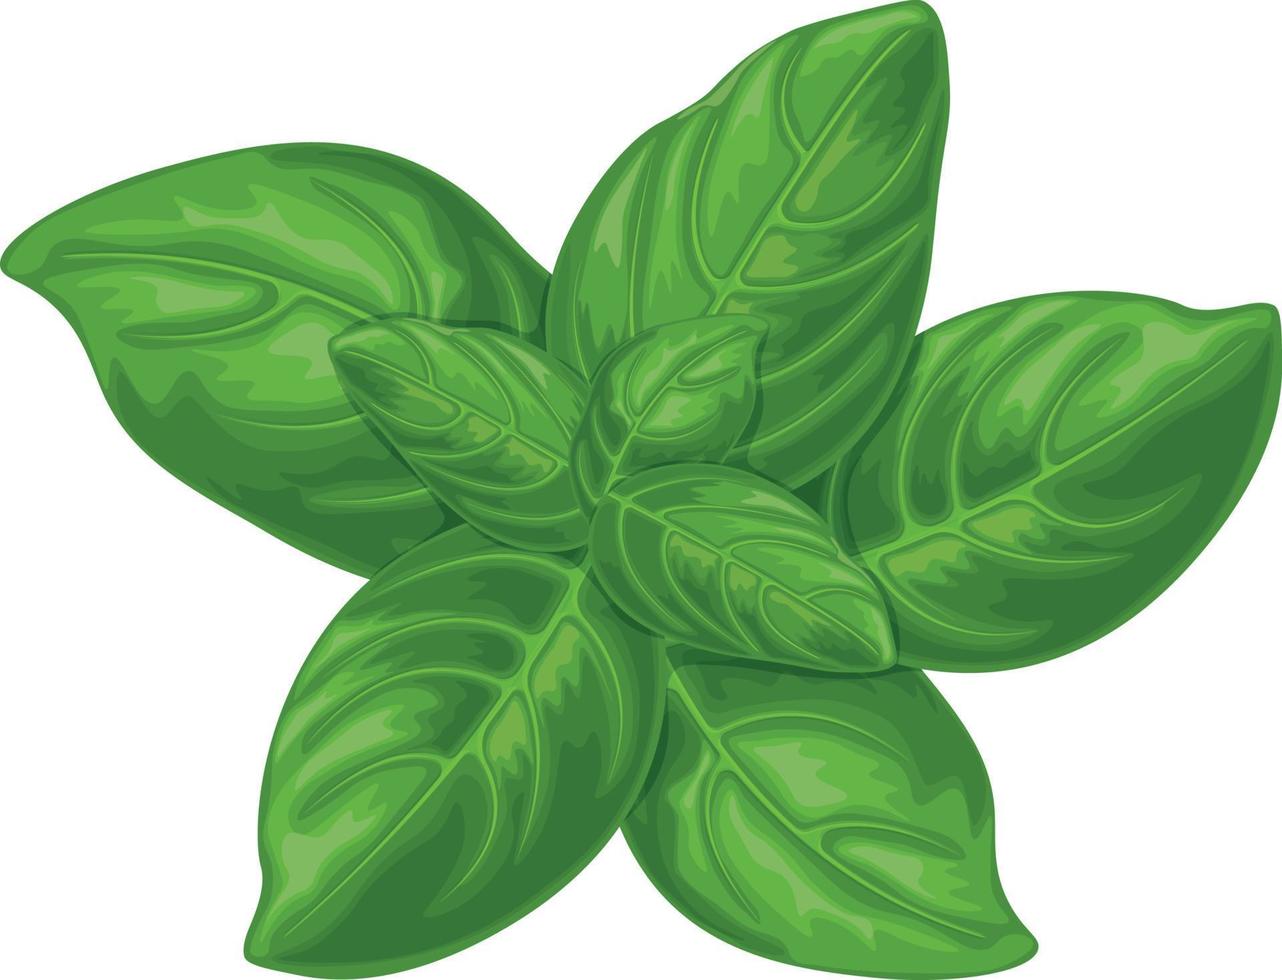 albahaca. hojas de albahaca verde. una planta aromática para condimentar. ilustración vectorial aislada en un fondo blanco vector